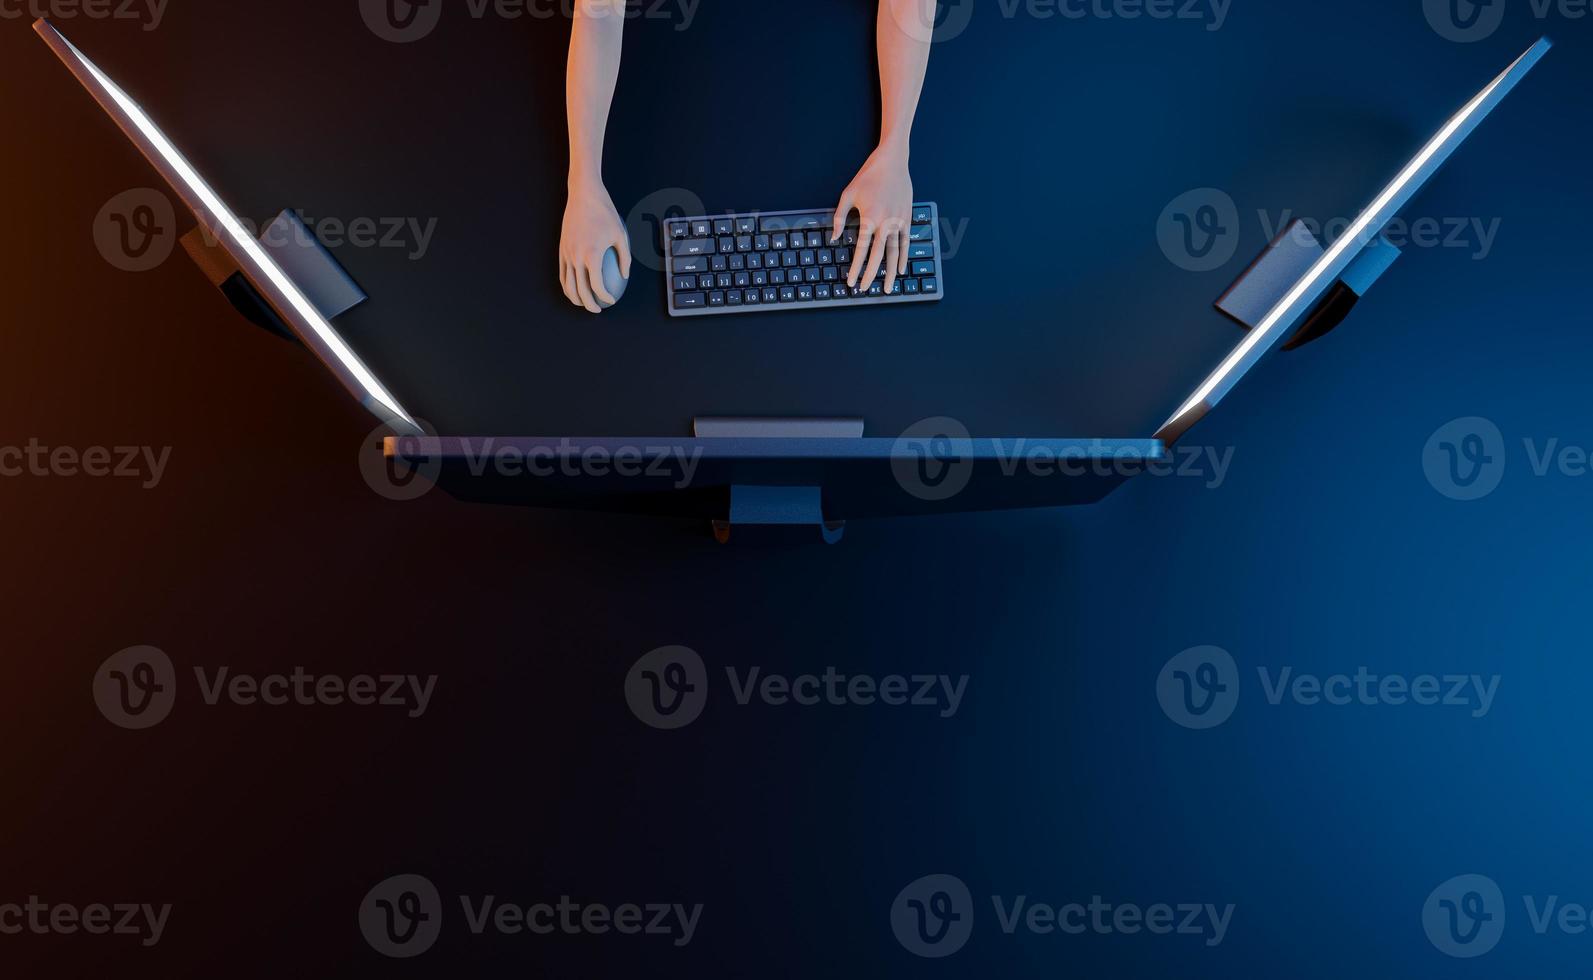 vue de dessus d'un espace de travail avec des moniteurs et des mains touchant le clavier photo